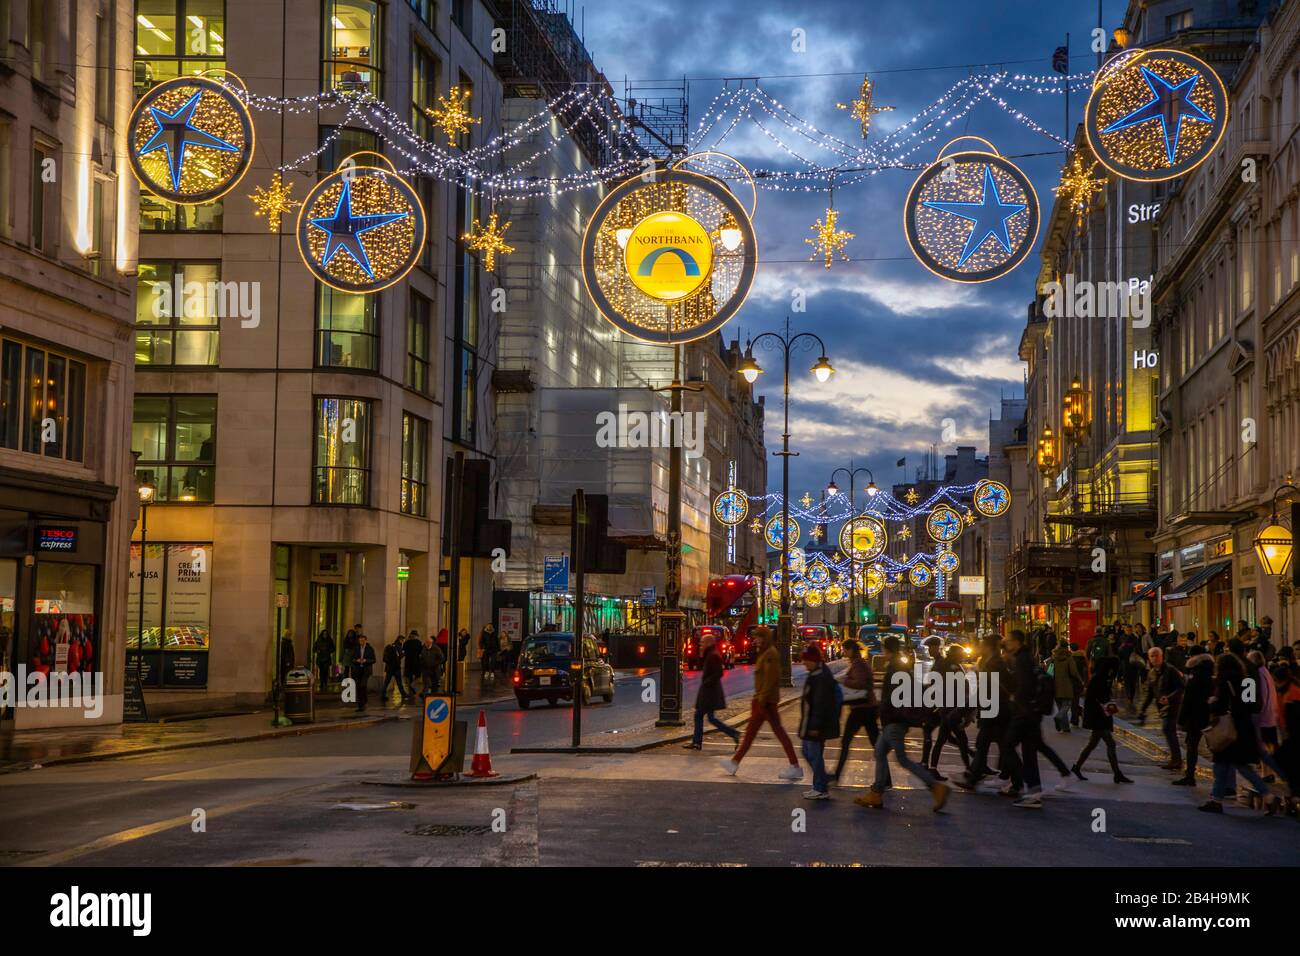 Northbank District, Christmas lighting, Christmas time, London, United Kingdom, Stock Photo